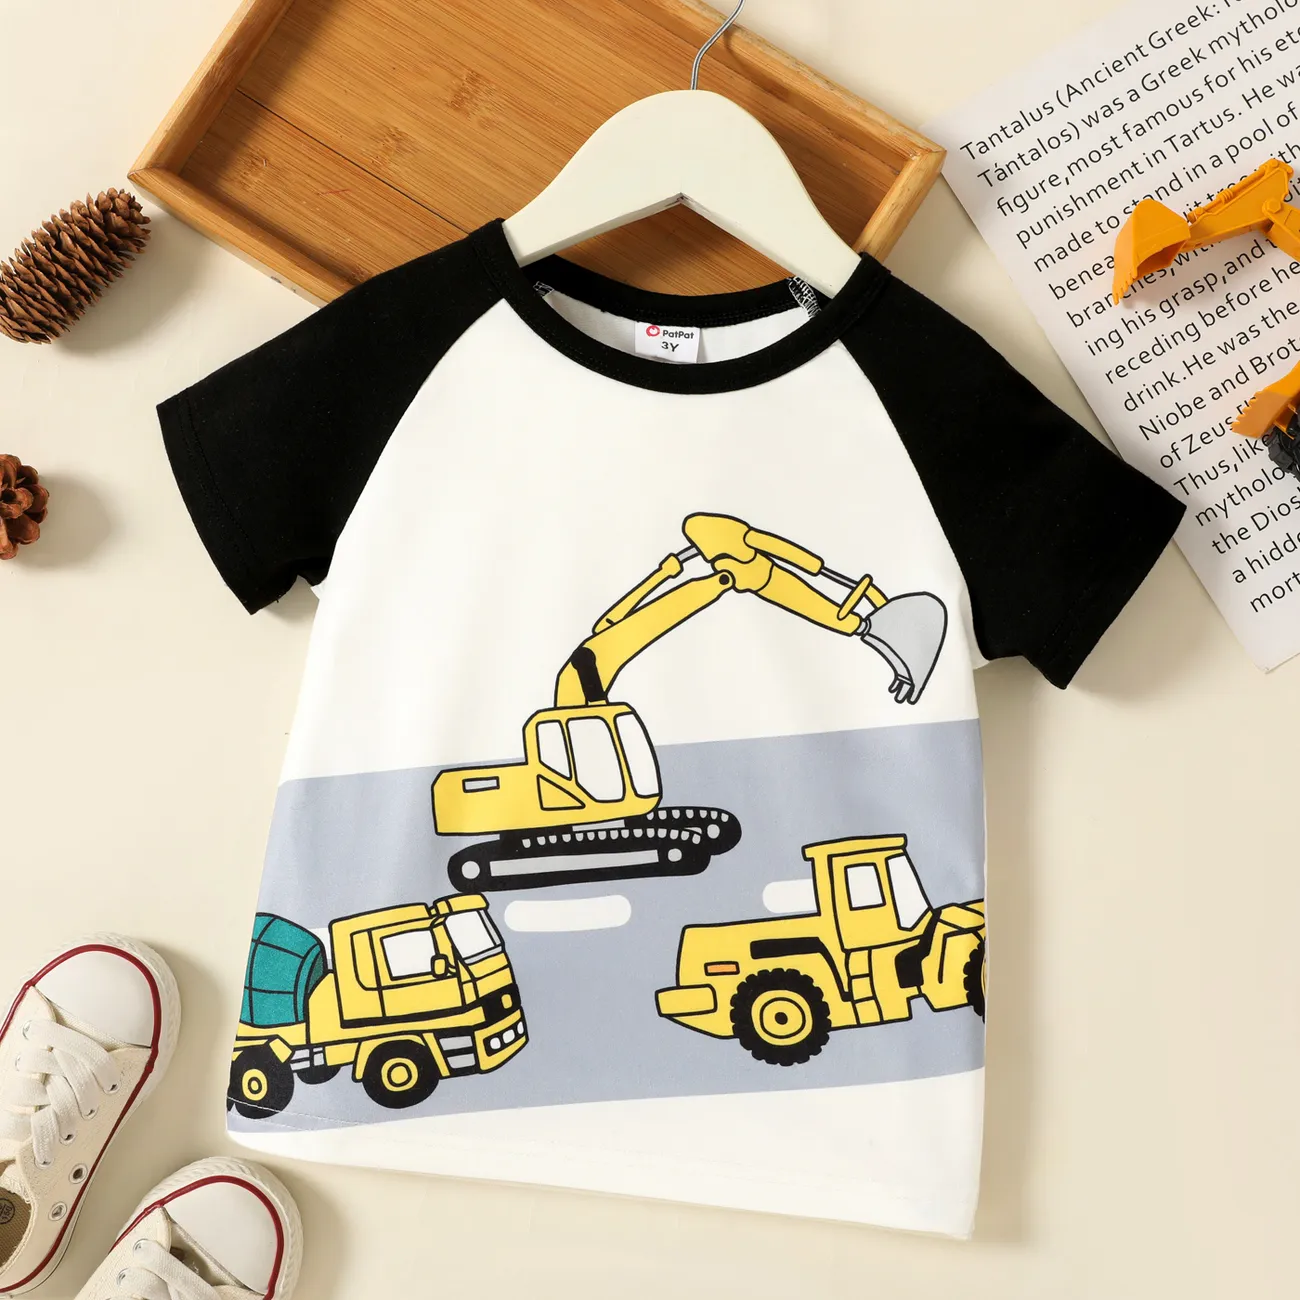 Criança Menino Costuras de tecido Infantil Manga curta T-shirts Preto big image 1